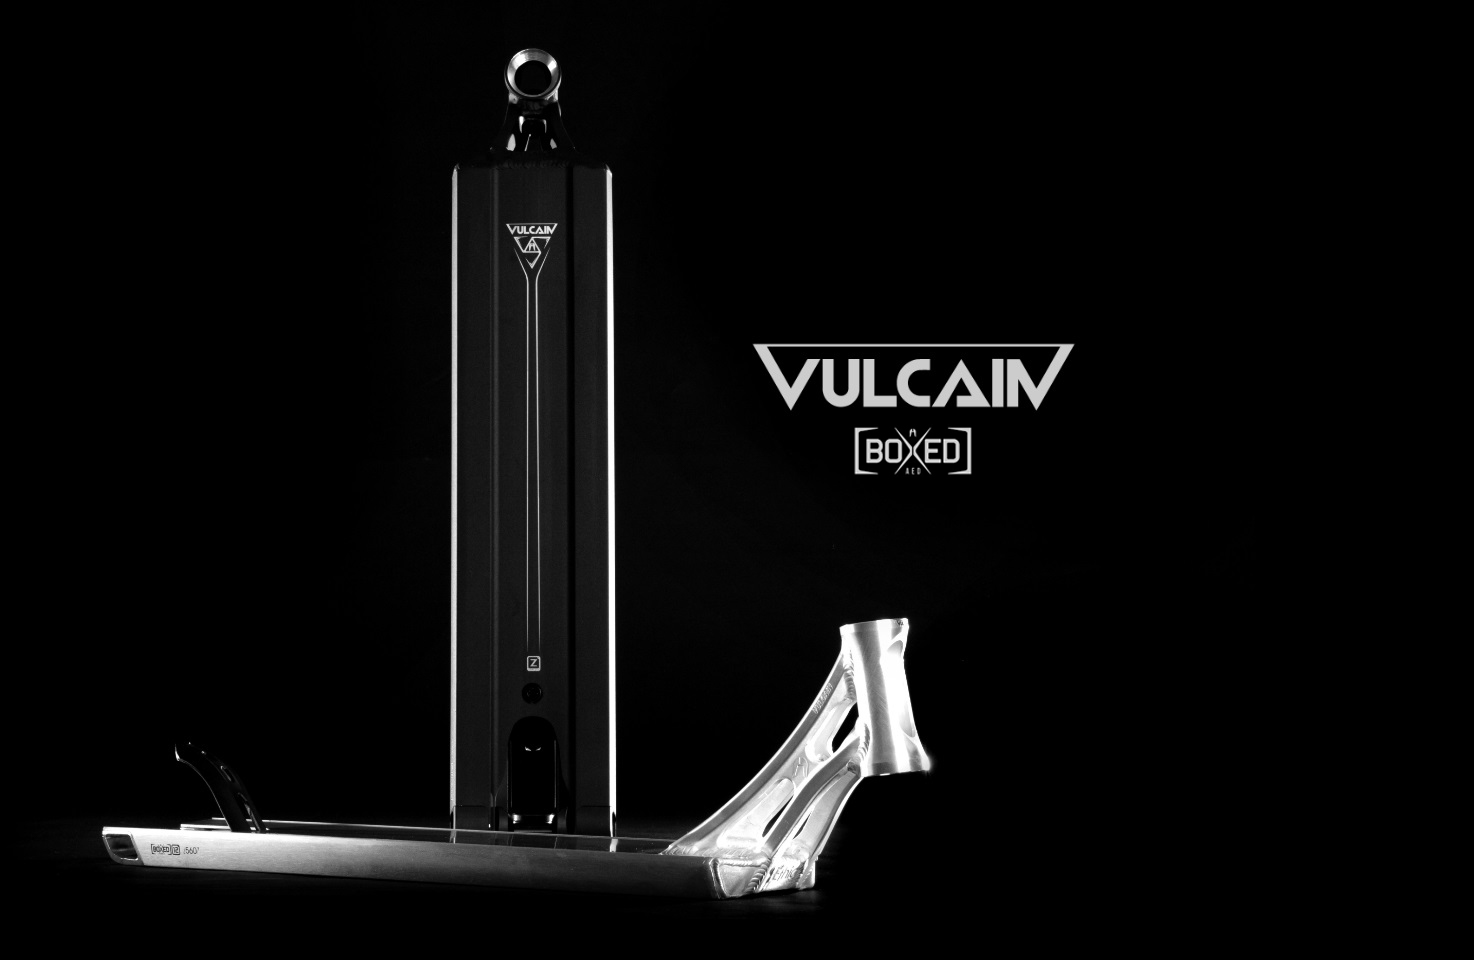 Vulcain boxed